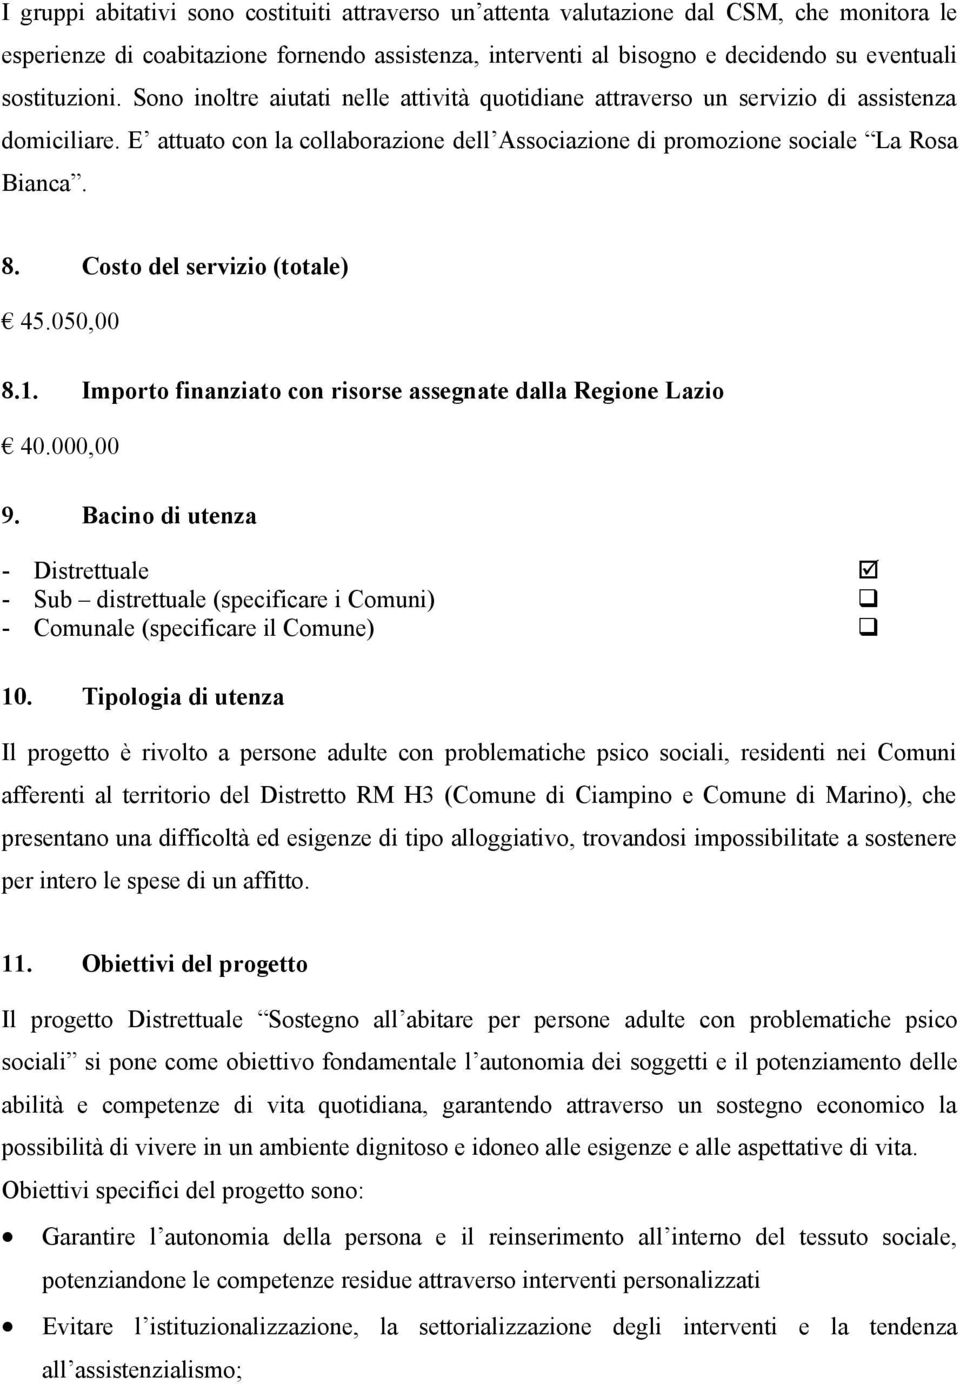 8. Costo del servizio (totale) 45.050,00 8.1. Importo finanziato con risorse assegnate dalla Regione Lazio 40.000,00 9.